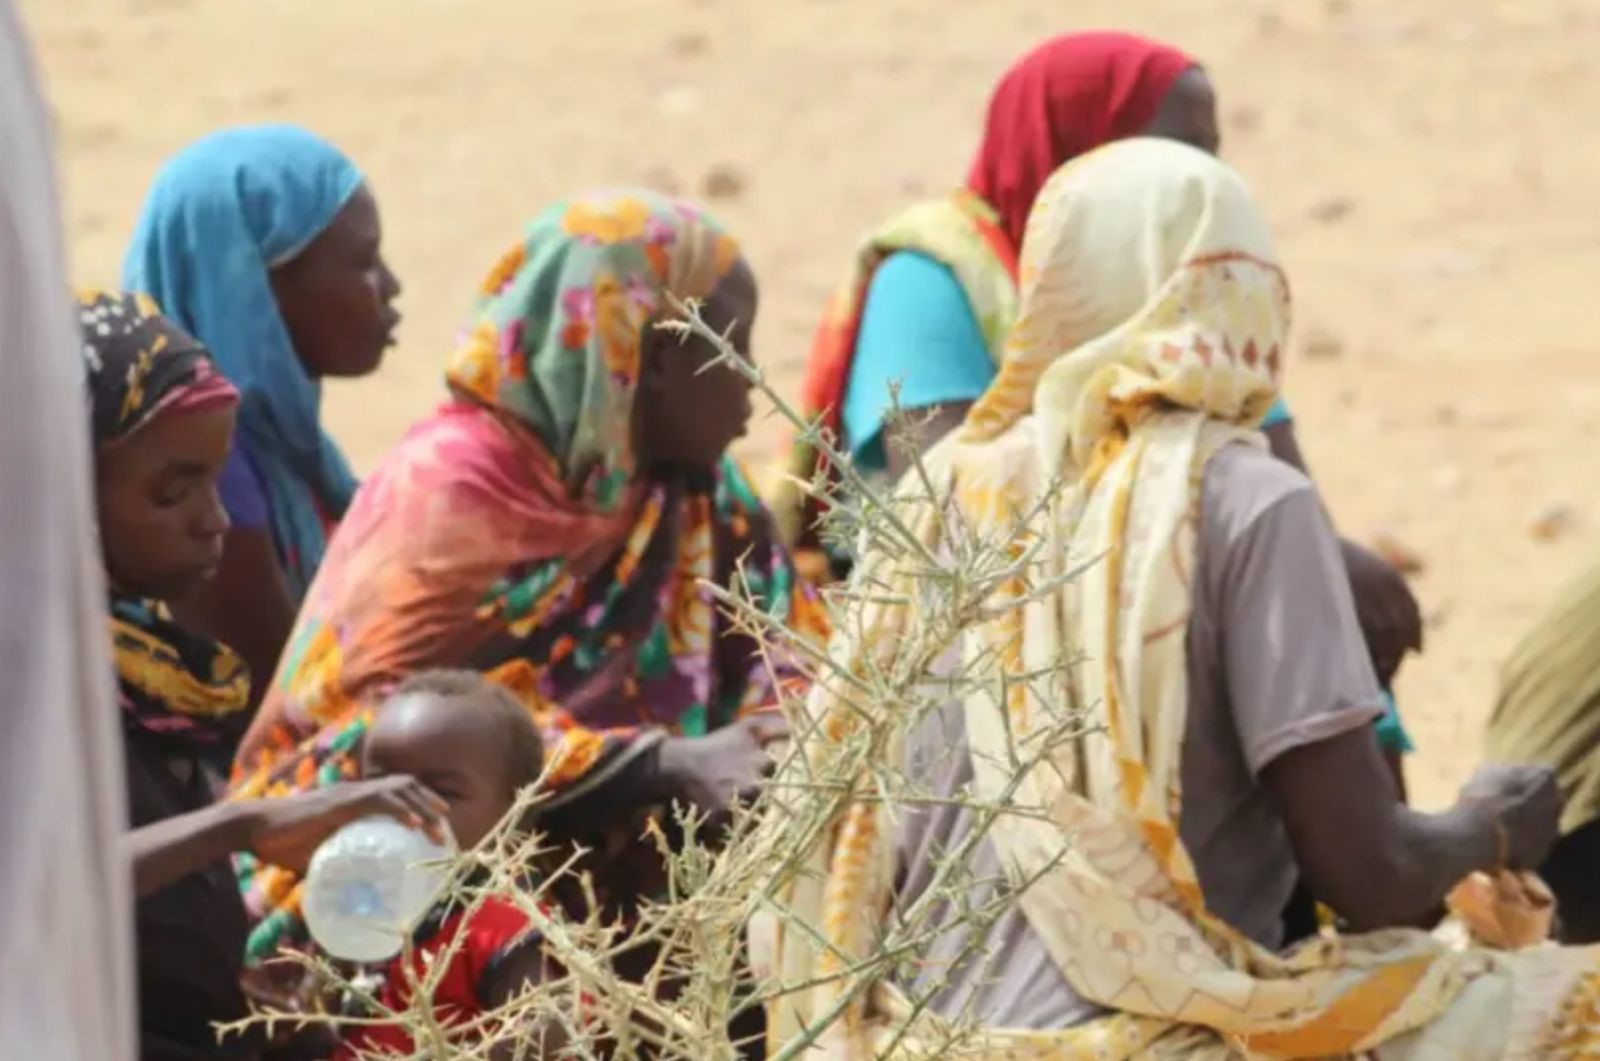 Migration: Le Tchad accueille plus d’un million de réfugiés